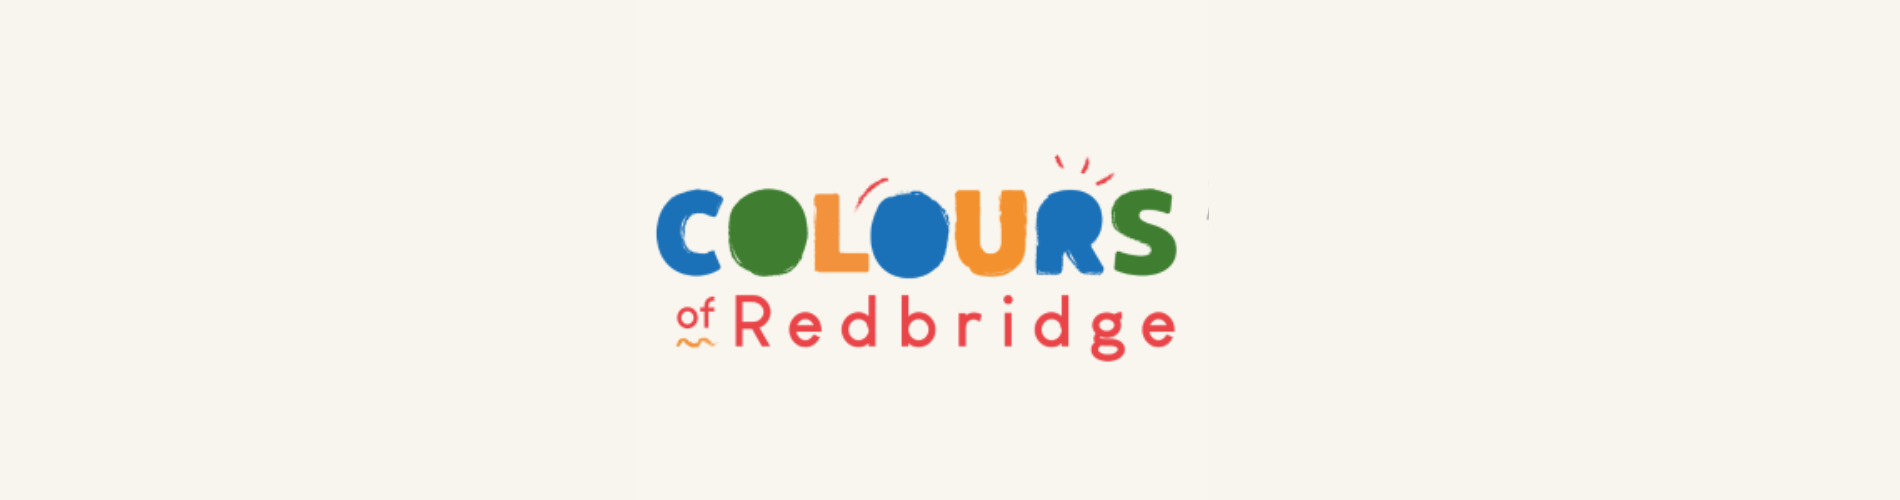 Colours of Redbridge